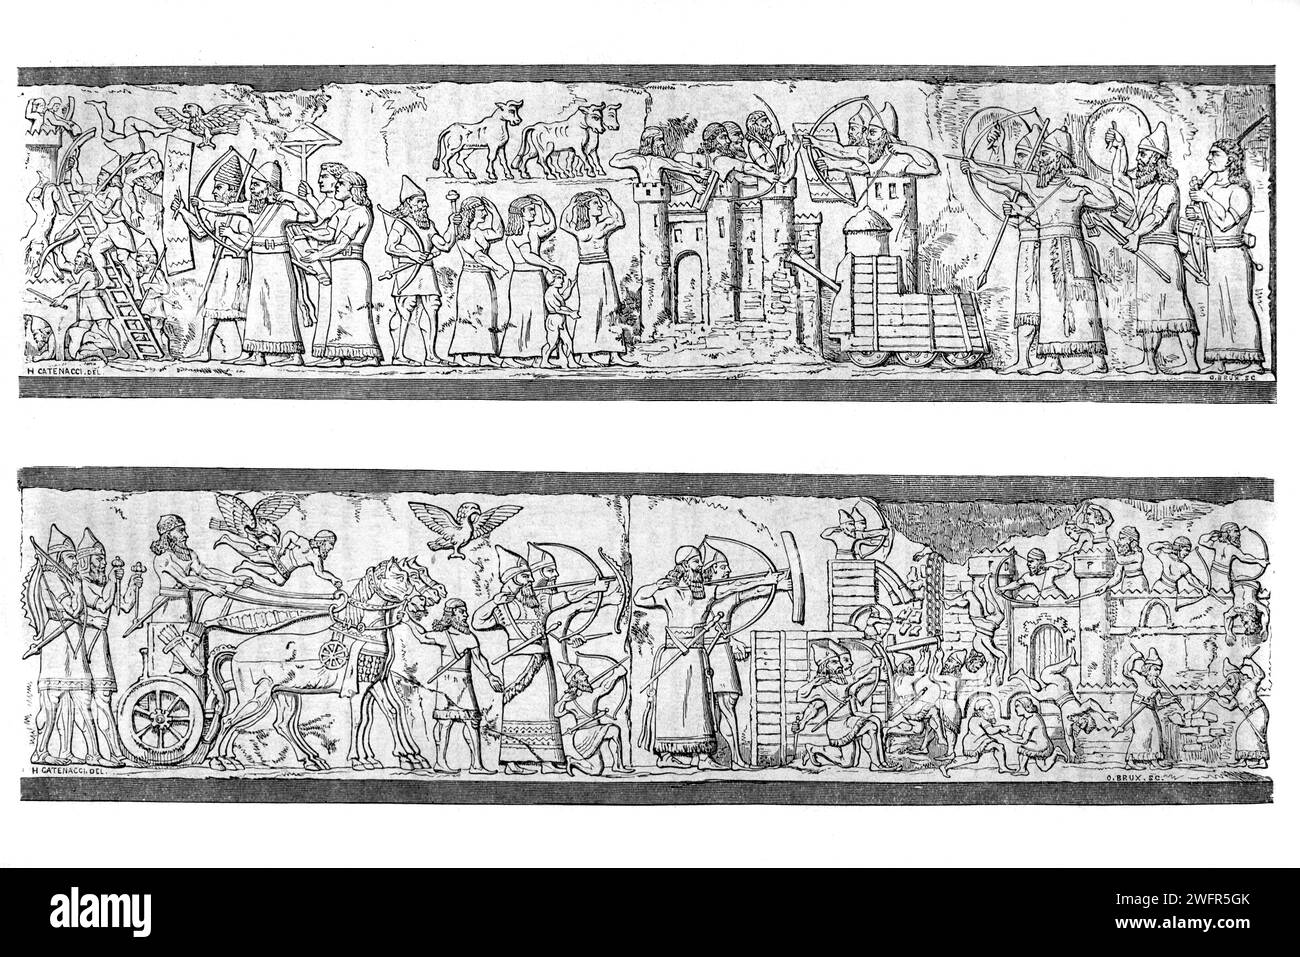 Assyrisches Relief, Bas Relief oder Stone Relief, das die Belagerung einer Stadt zeigt. Aus Dur-Sharrukin, jetzt Chorsabad Irak. Vintage oder historische Gravur oder Illustration 1863 Stockfoto